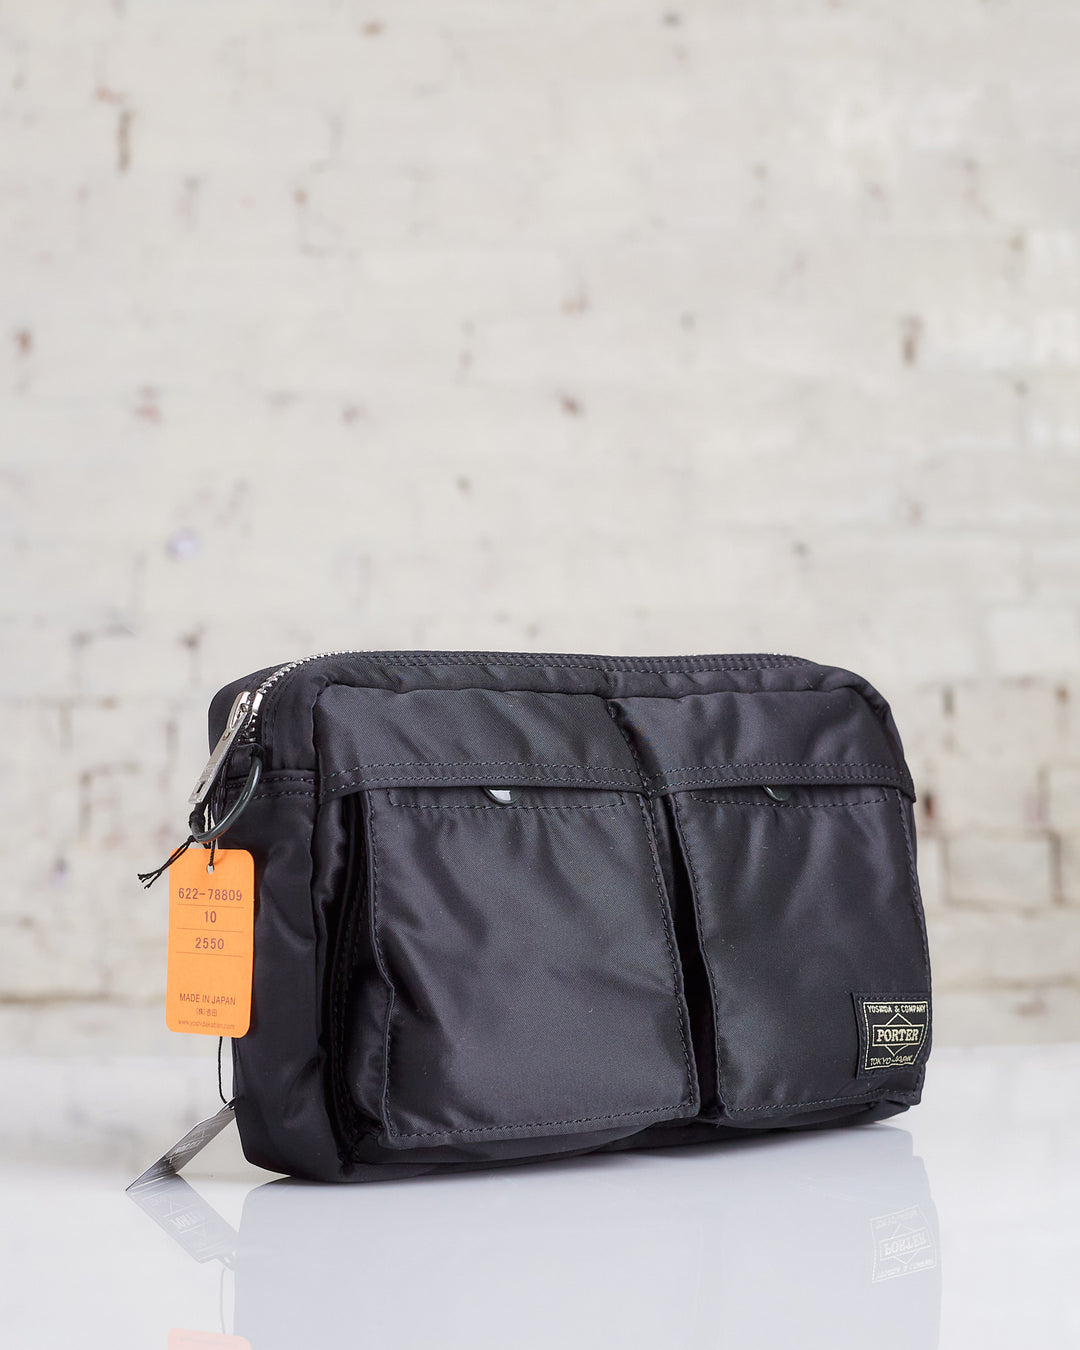 Porter Tanker Shoulder Bag Black